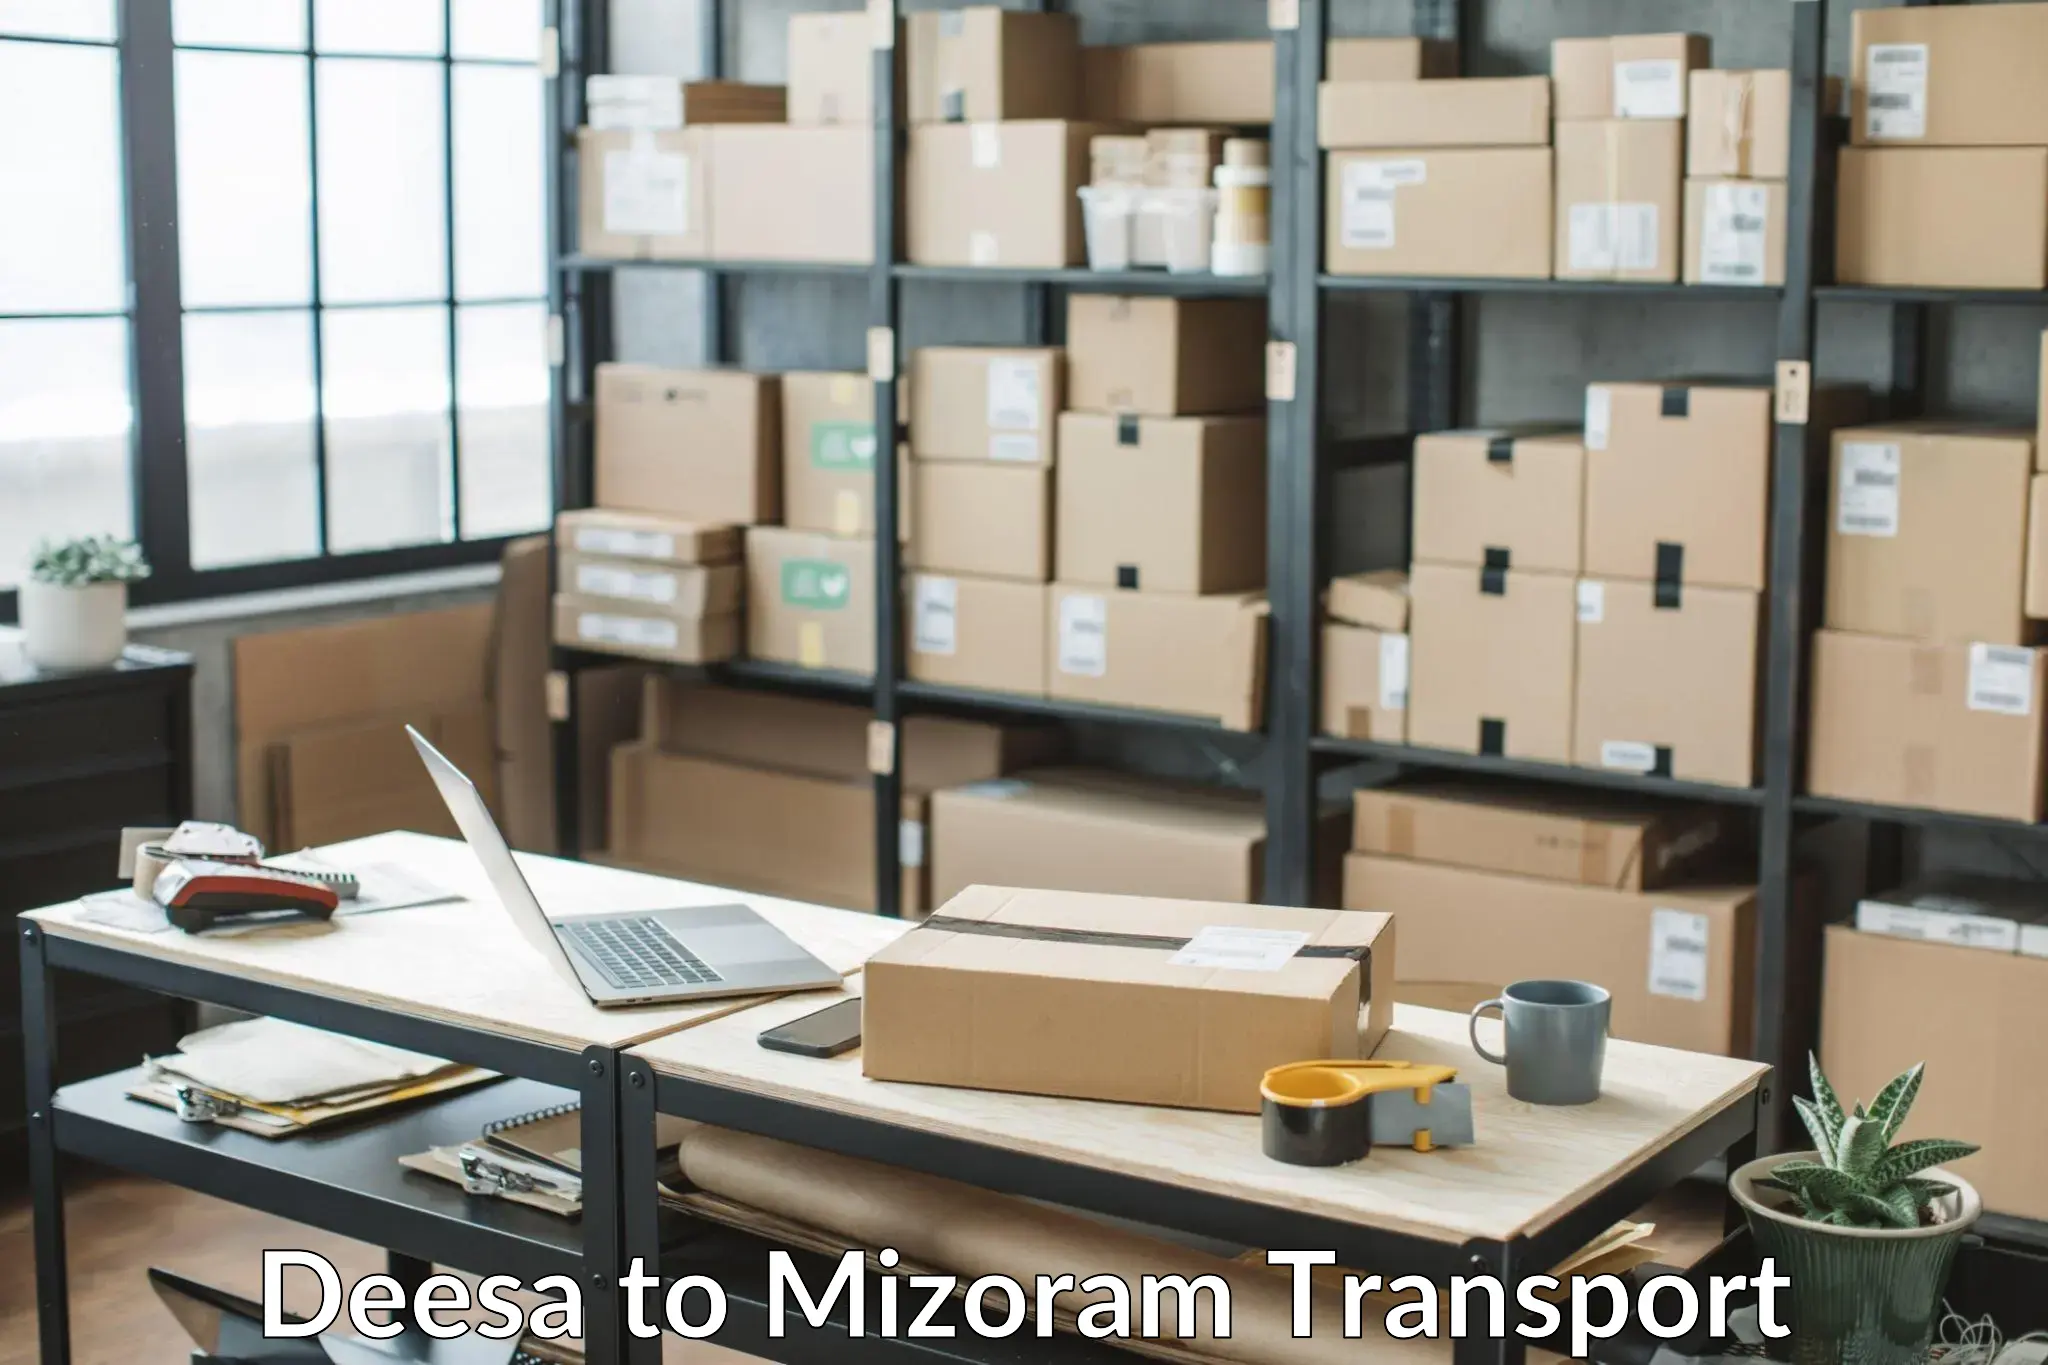 Nearest transport service Deesa to Mizoram